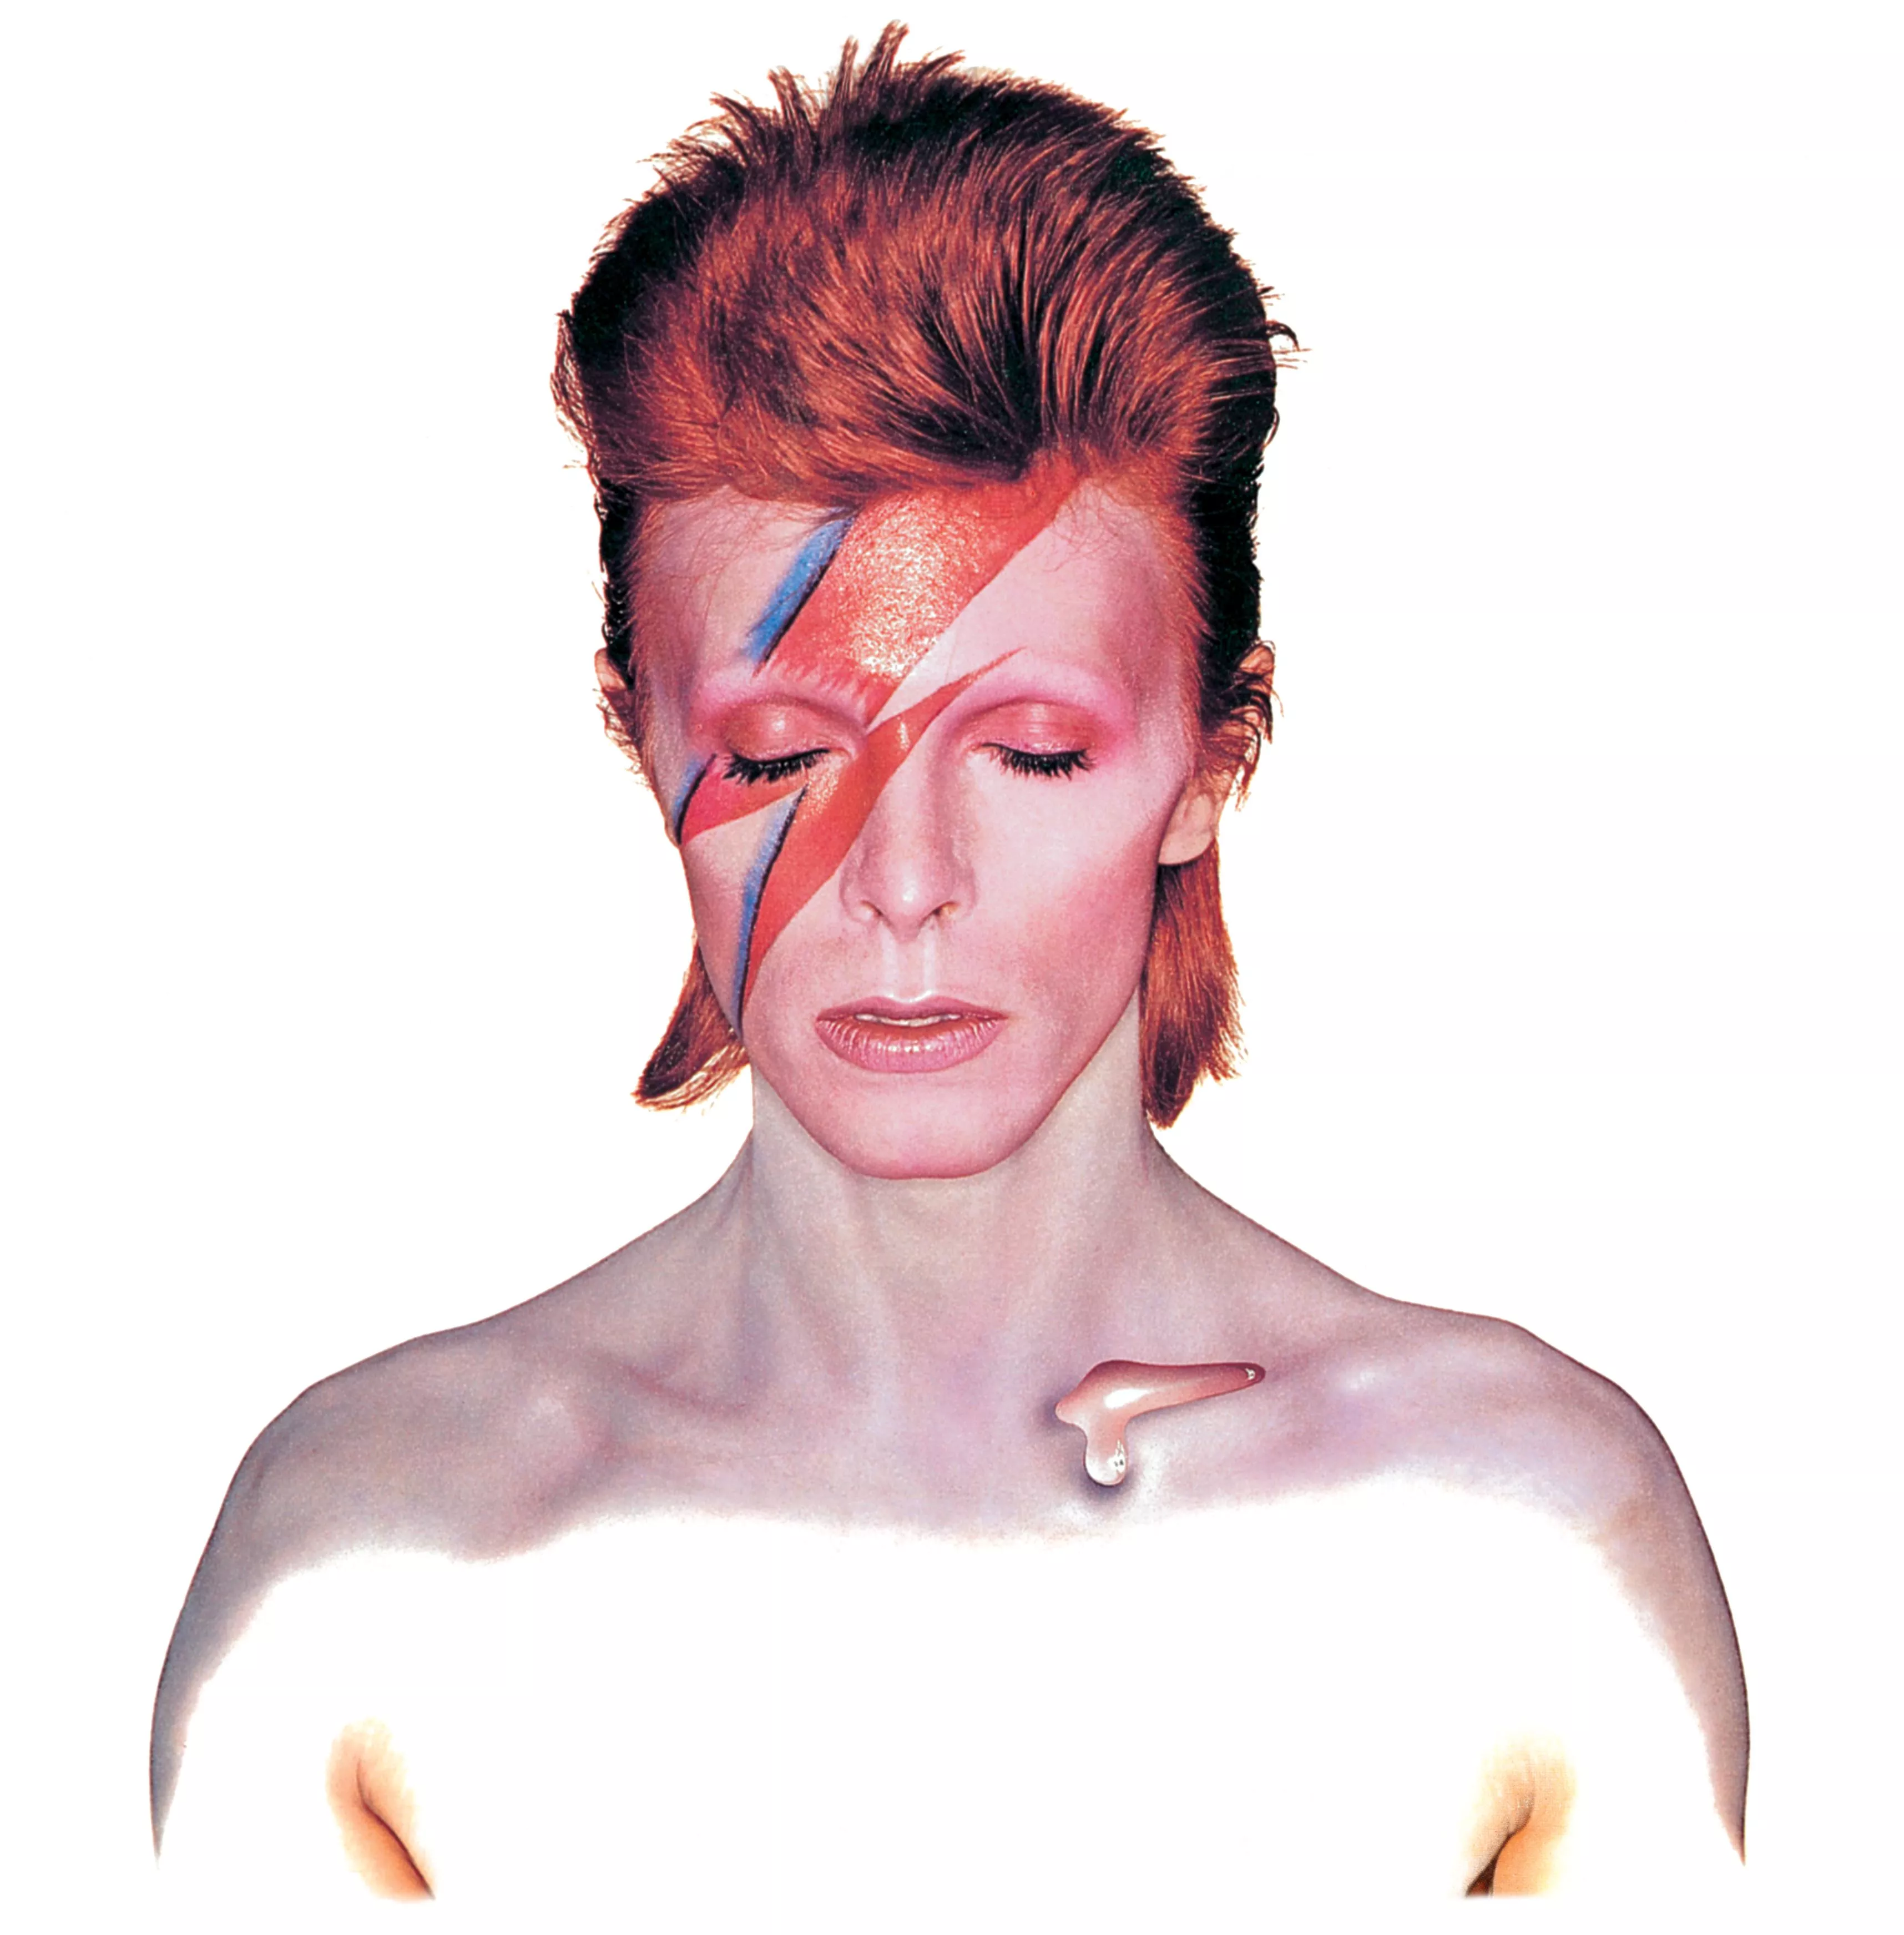 I dag ville han være fyldt 70: David Bowie 1947-2016 – Den evige kamæleon